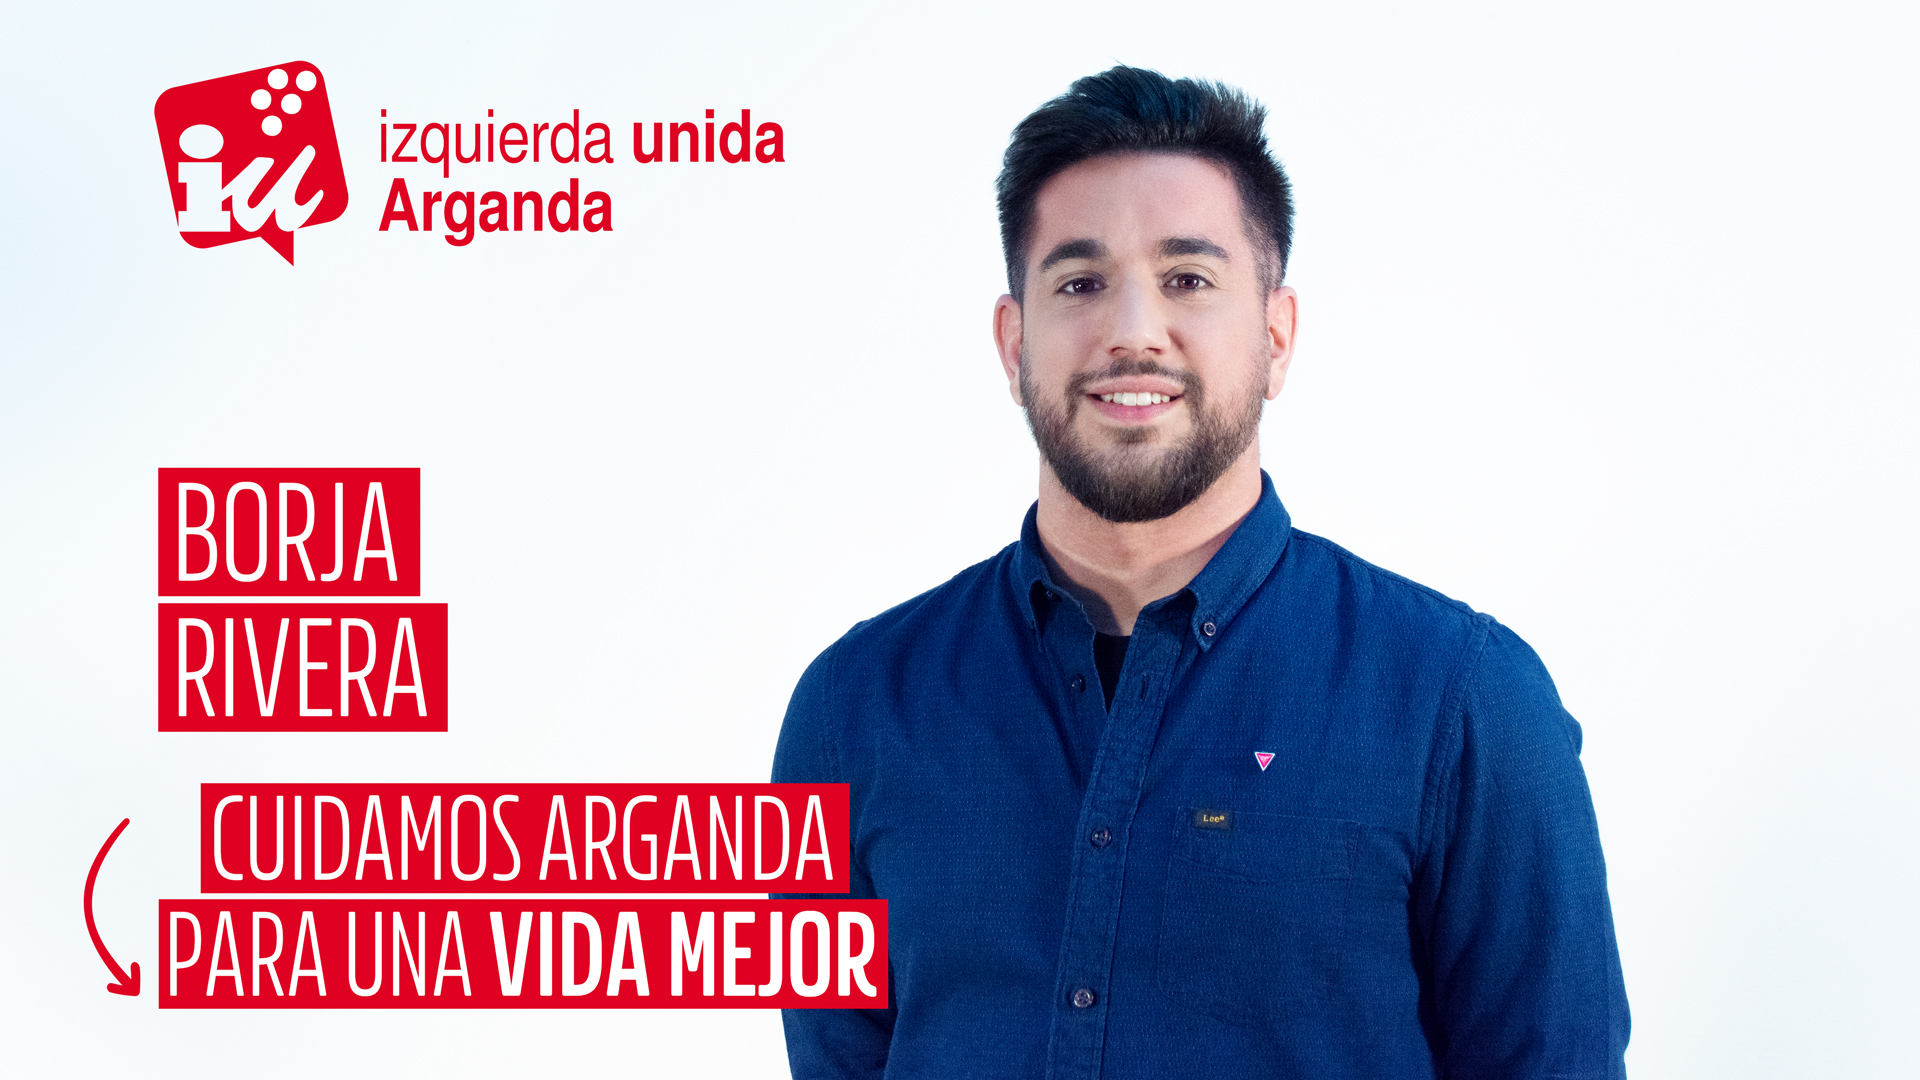 Borja Rivera - Cuidamos Arganda para una vida mejor